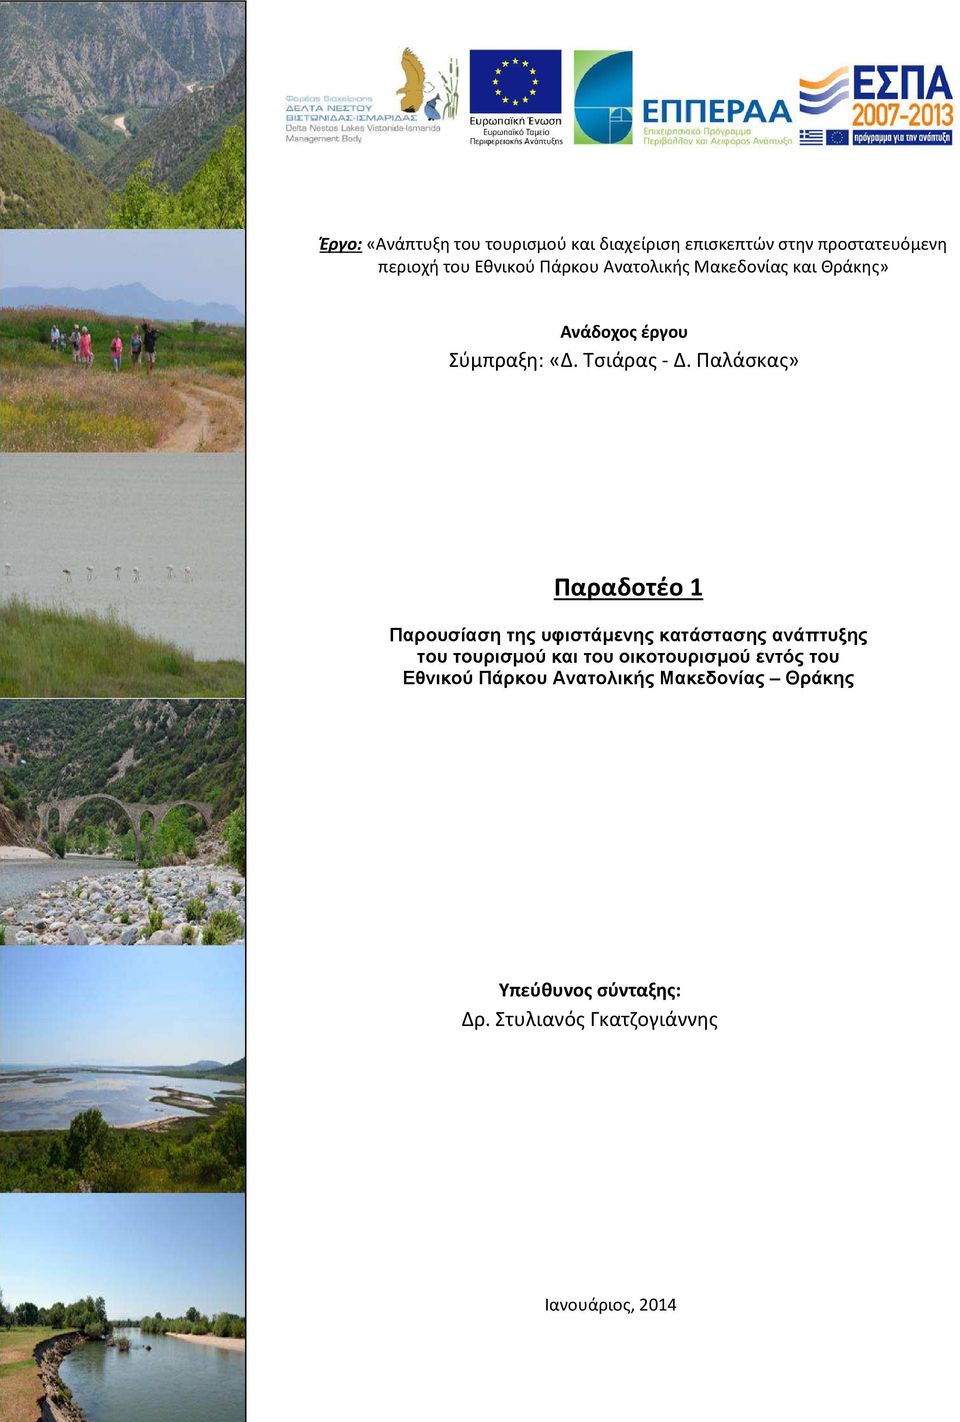 Παλάσκας» Παραδοτέο 1 Παρουσίαση της υφιστάµενης κατάστασης ανάπτυξης του τουρισµού και του